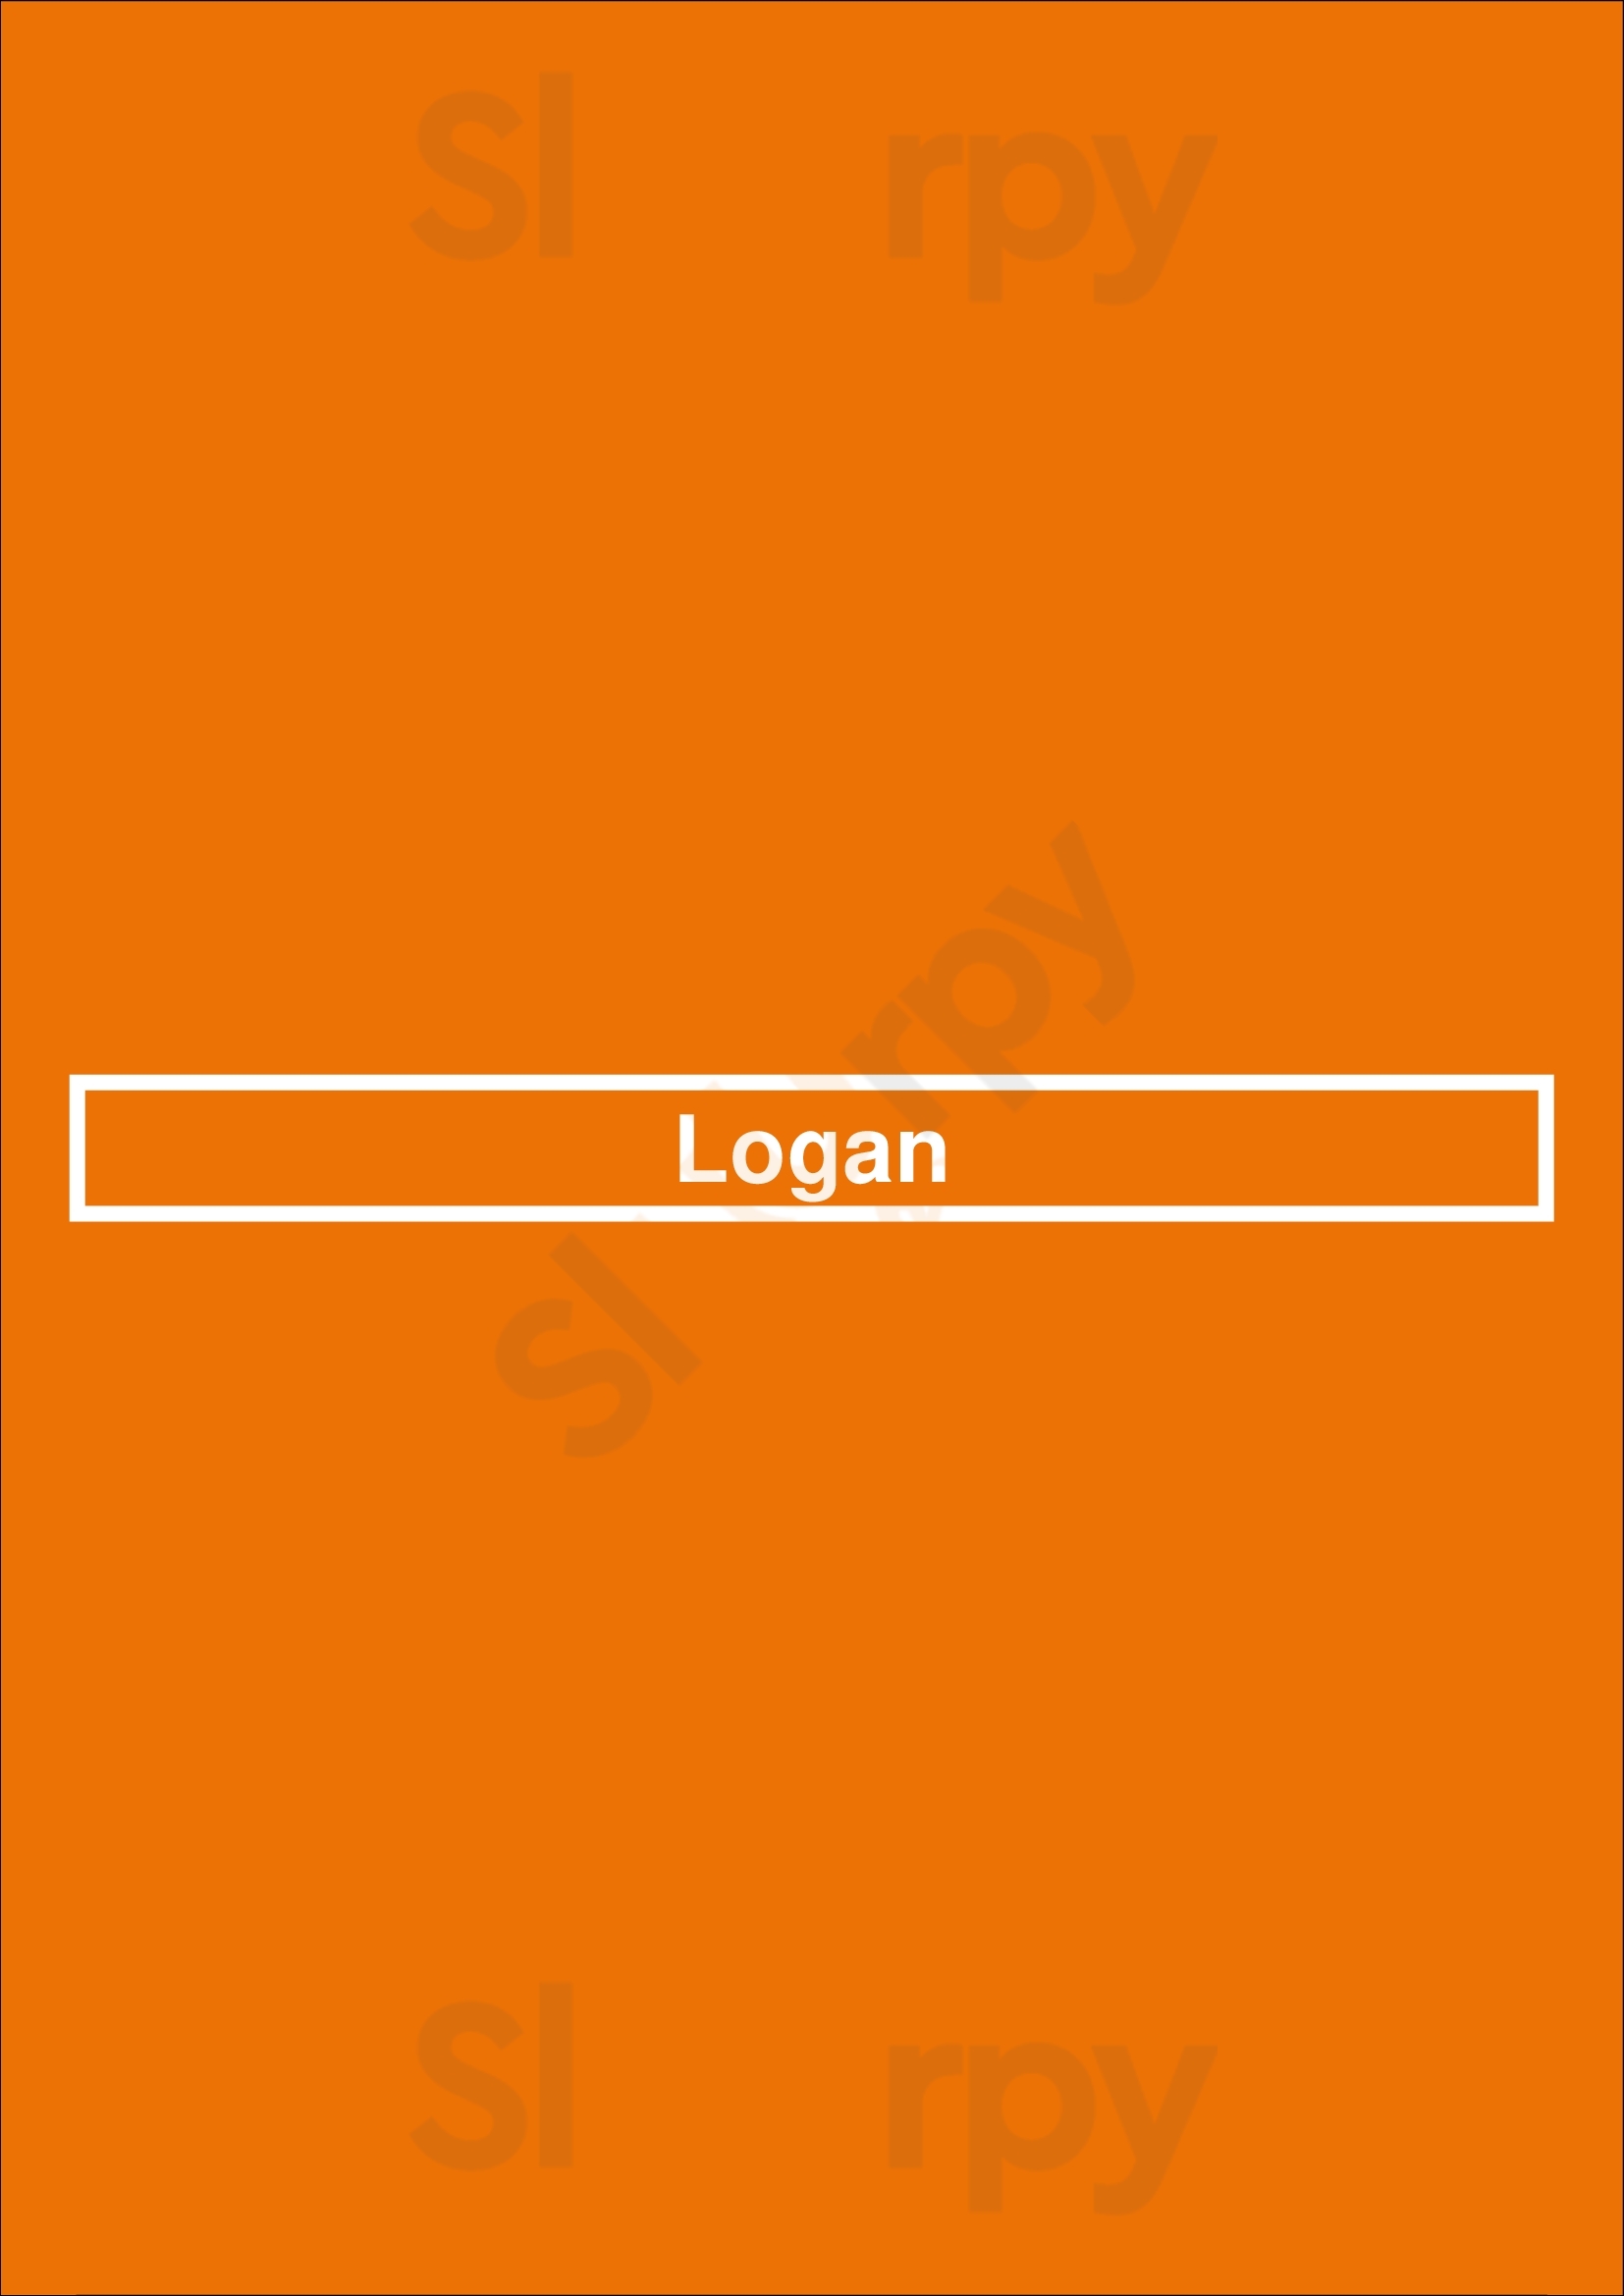 Logan Ann Arbor Menu - 1